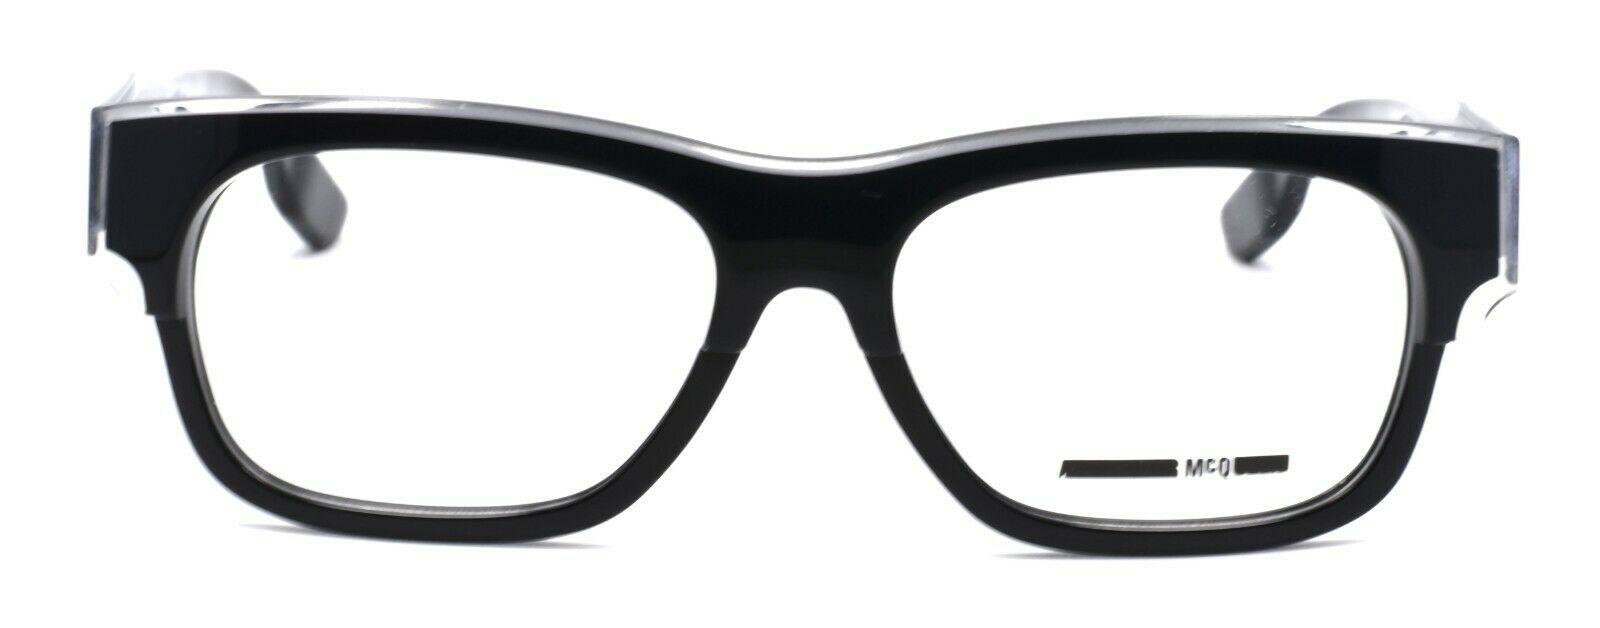 2-McQ Alexander McQueen MQ0027O 004 Unisex Eyeglasses 52-16-145 Crystal / Black-889652010823-IKSpecs